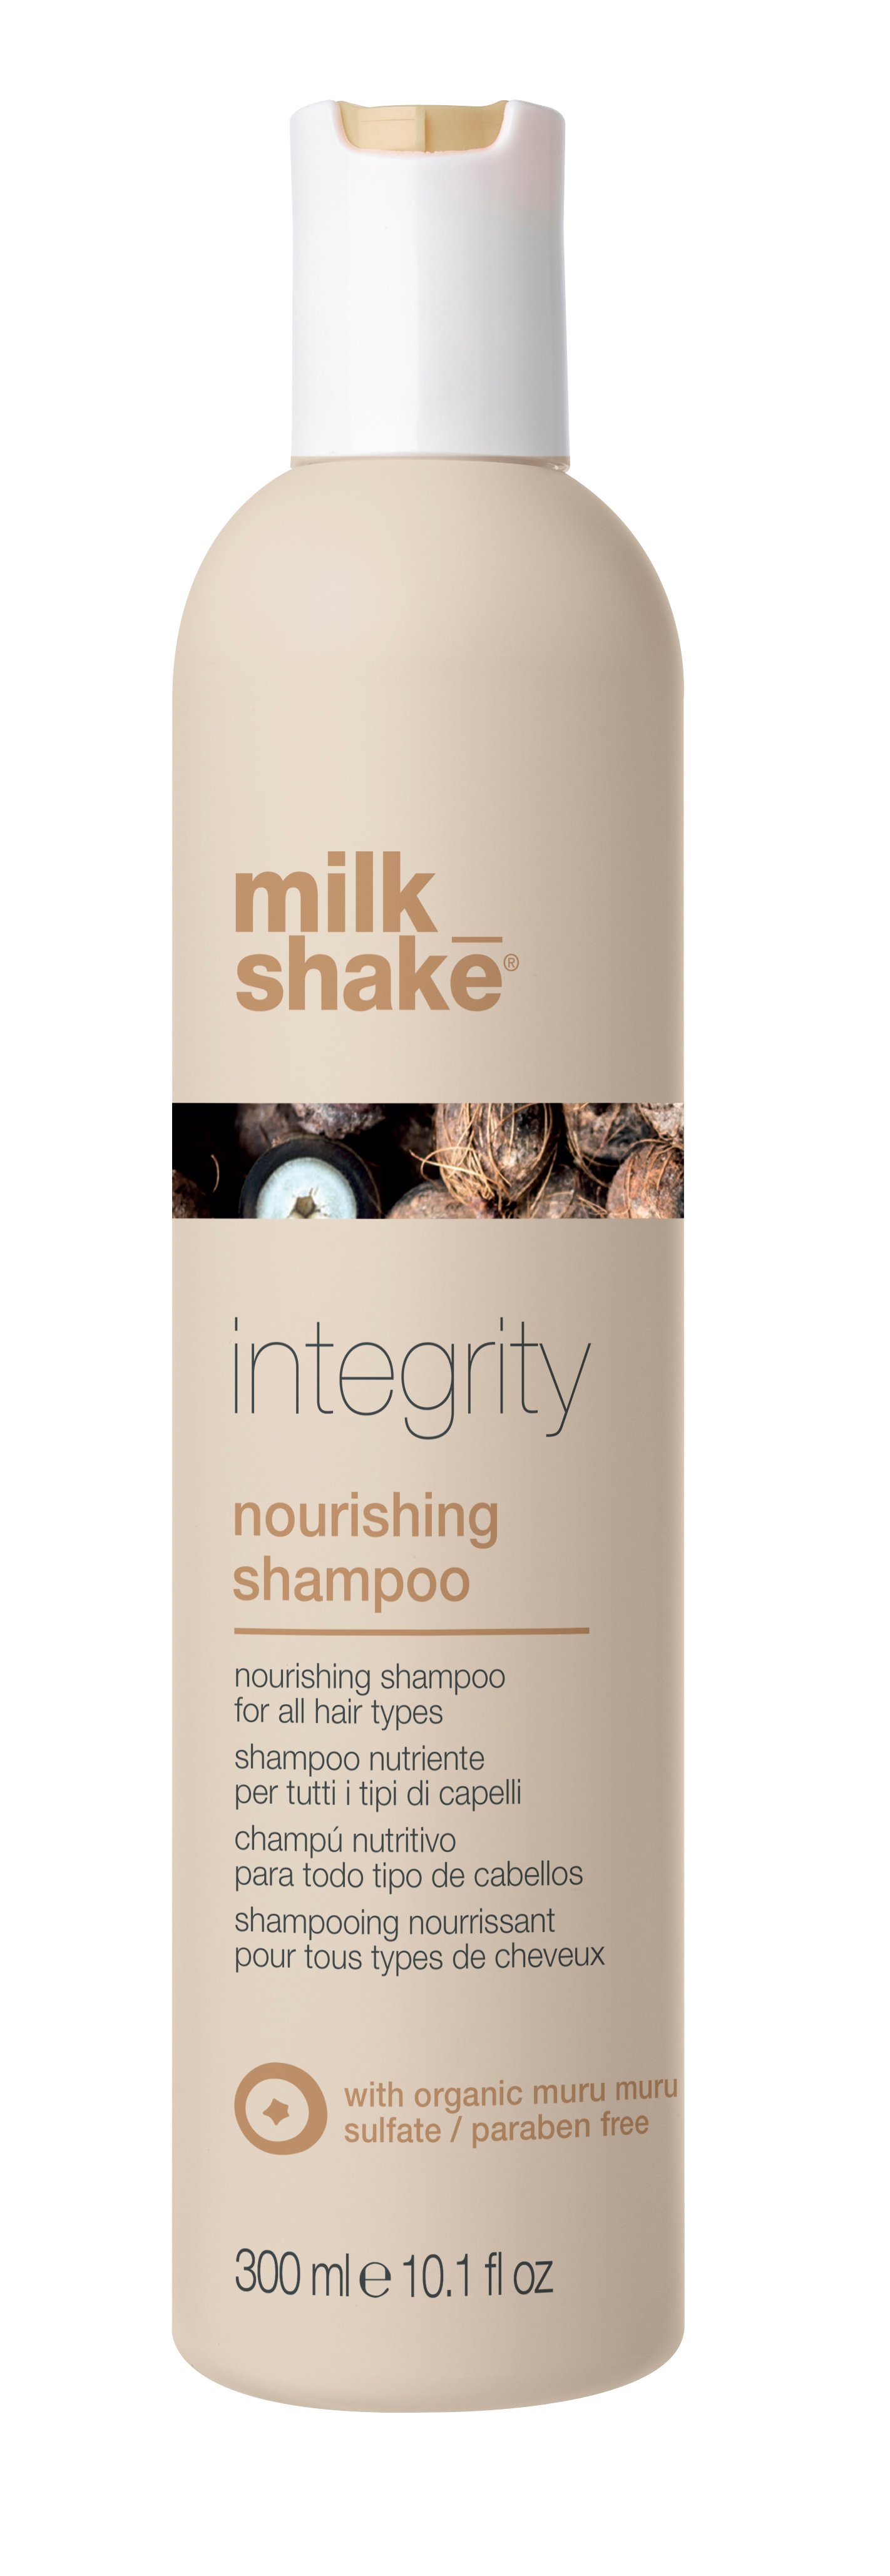 Купить Шампунь для всех типов волос MILK_SHAKE Integrity Nourishig Shampoo питательный 300 мл, MILK_SHAKE integrity nourishig shampoo Питательный шампунь для всех типов волос, 300 мл